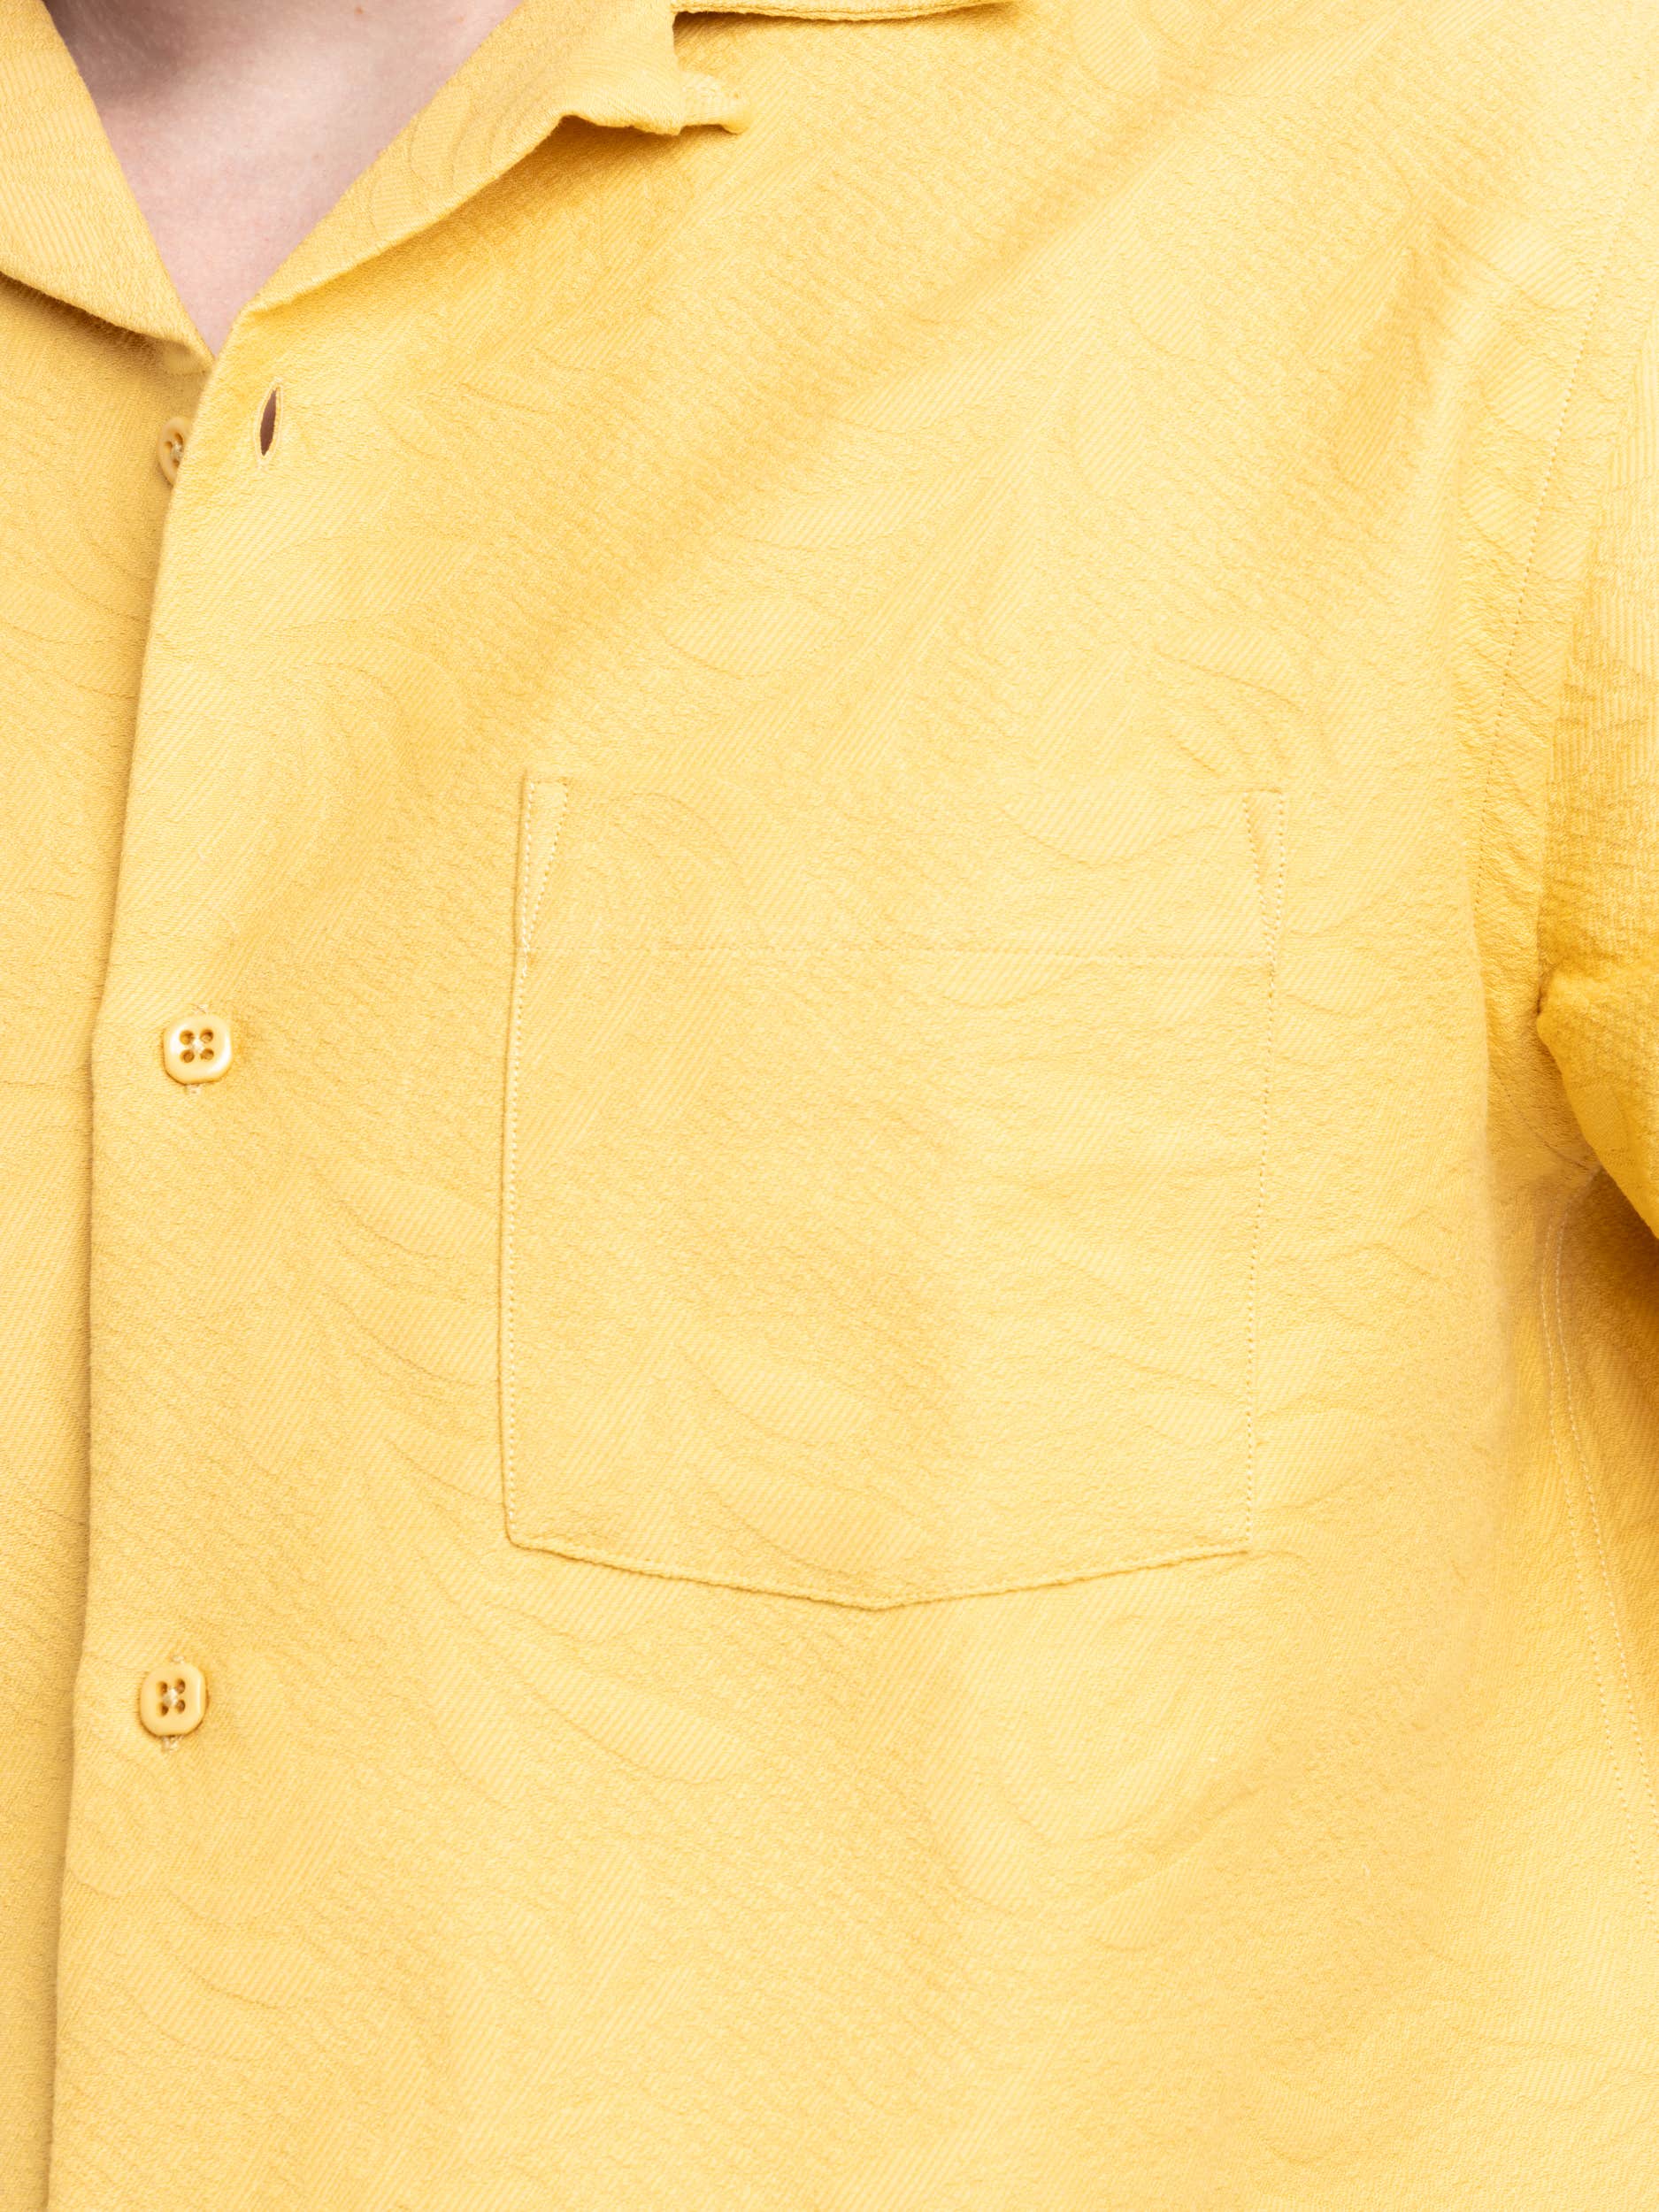 Yellow Beach Resort Shirt